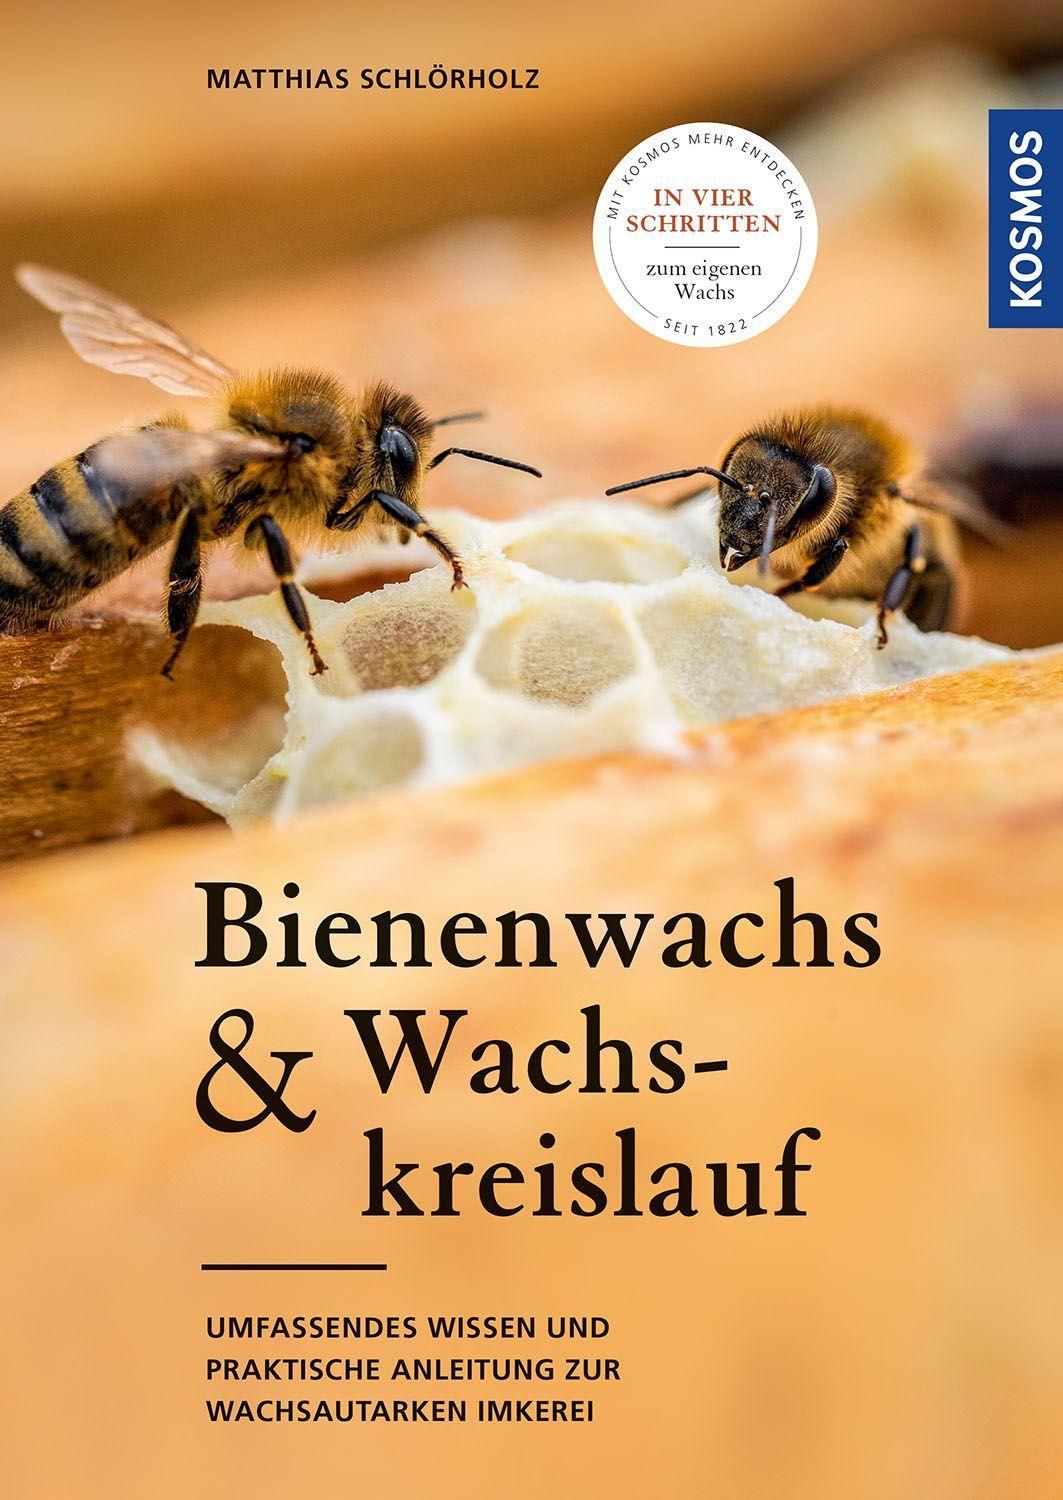 Bienenwachs & Wachskreislauf, M. Schlörholz, Kosmos Verlag